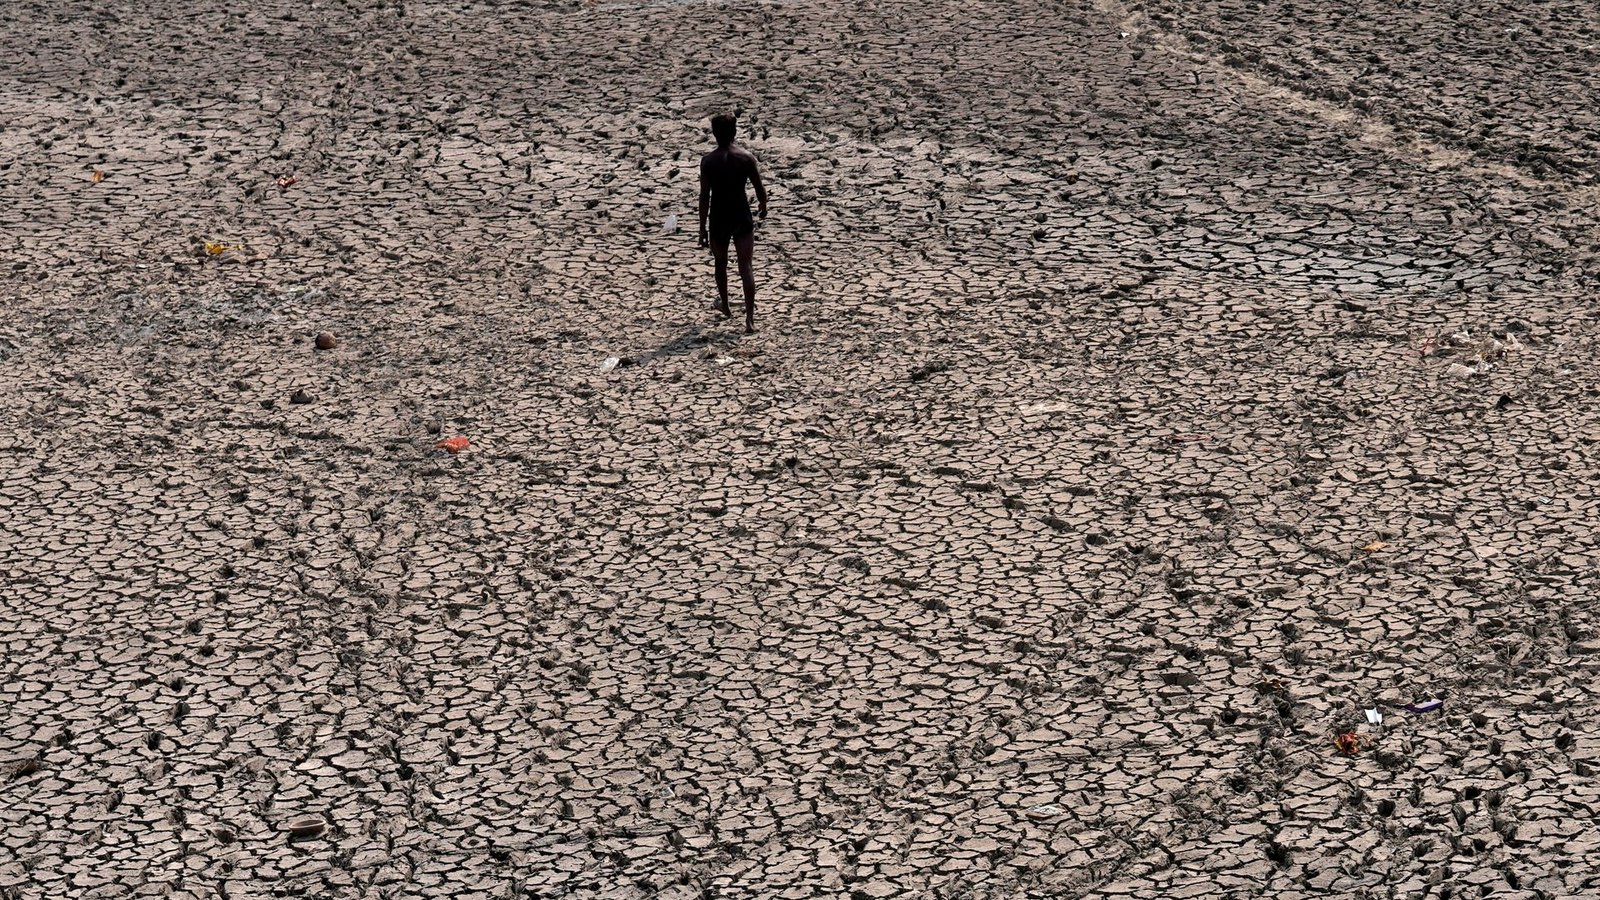 Ausgetrocknetes Flussbett in Indien. Die globale Erwärmung nimt laut einem Bericht der Weltwetterorganisation weiter zu.Foto: Manish Swarup/AP/dpa